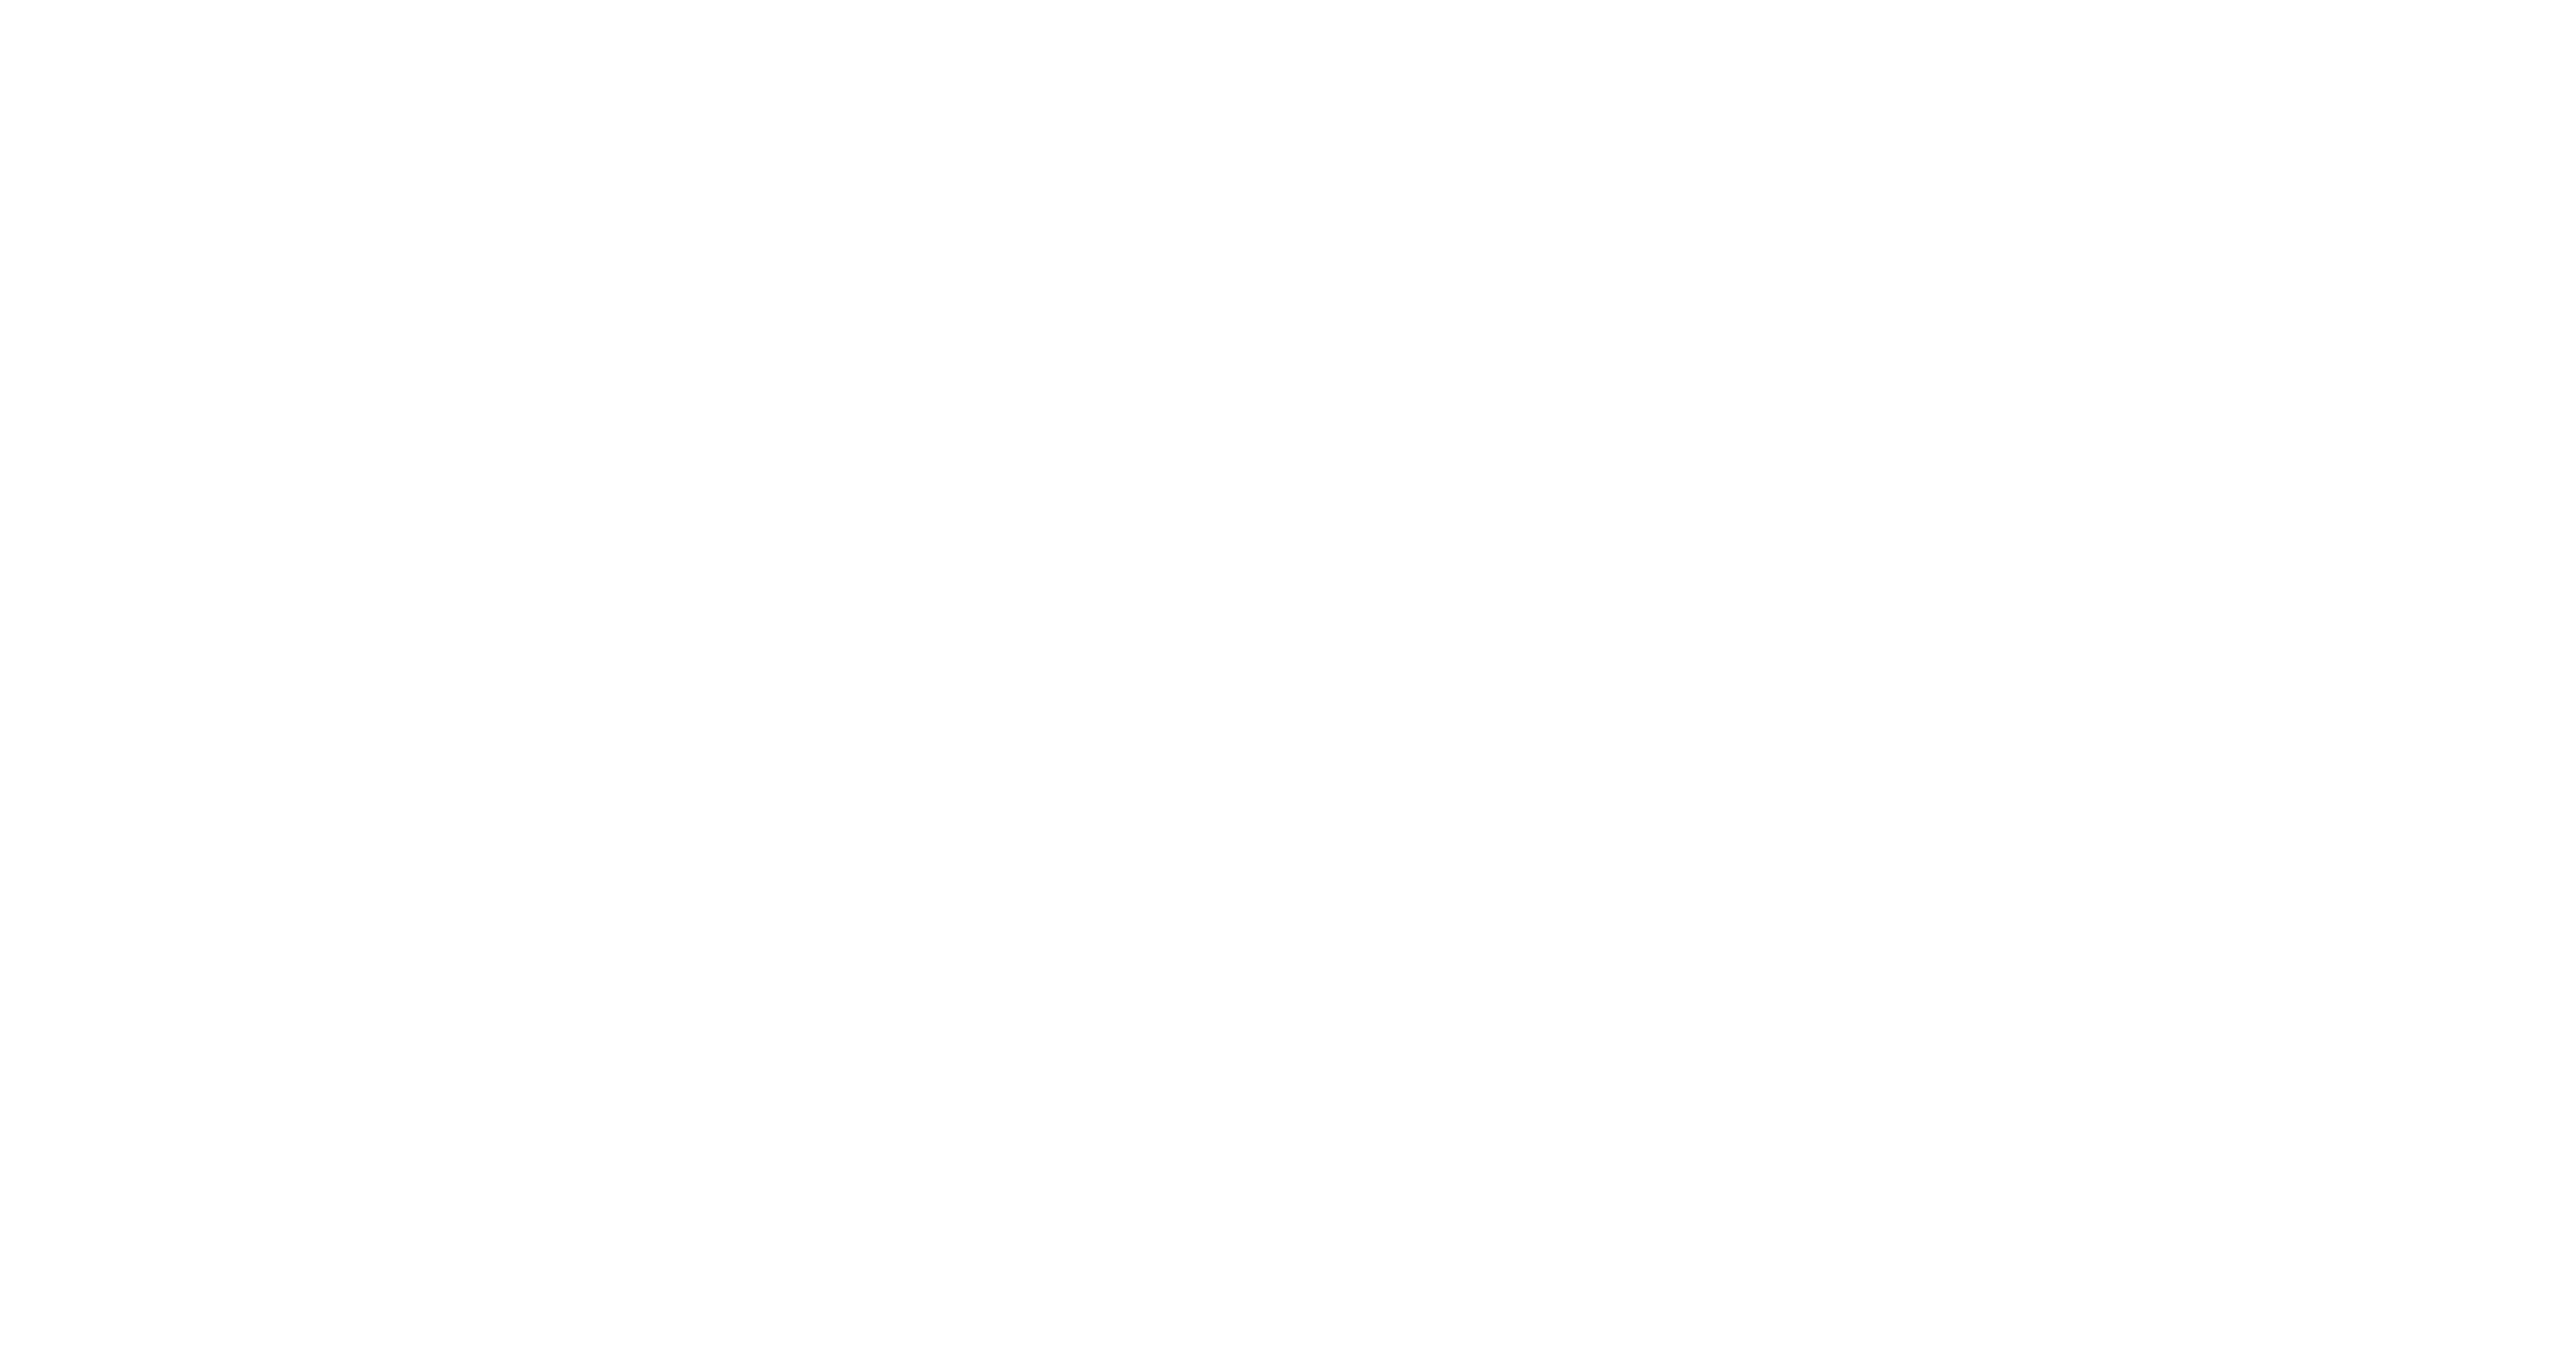 sflc.in logo